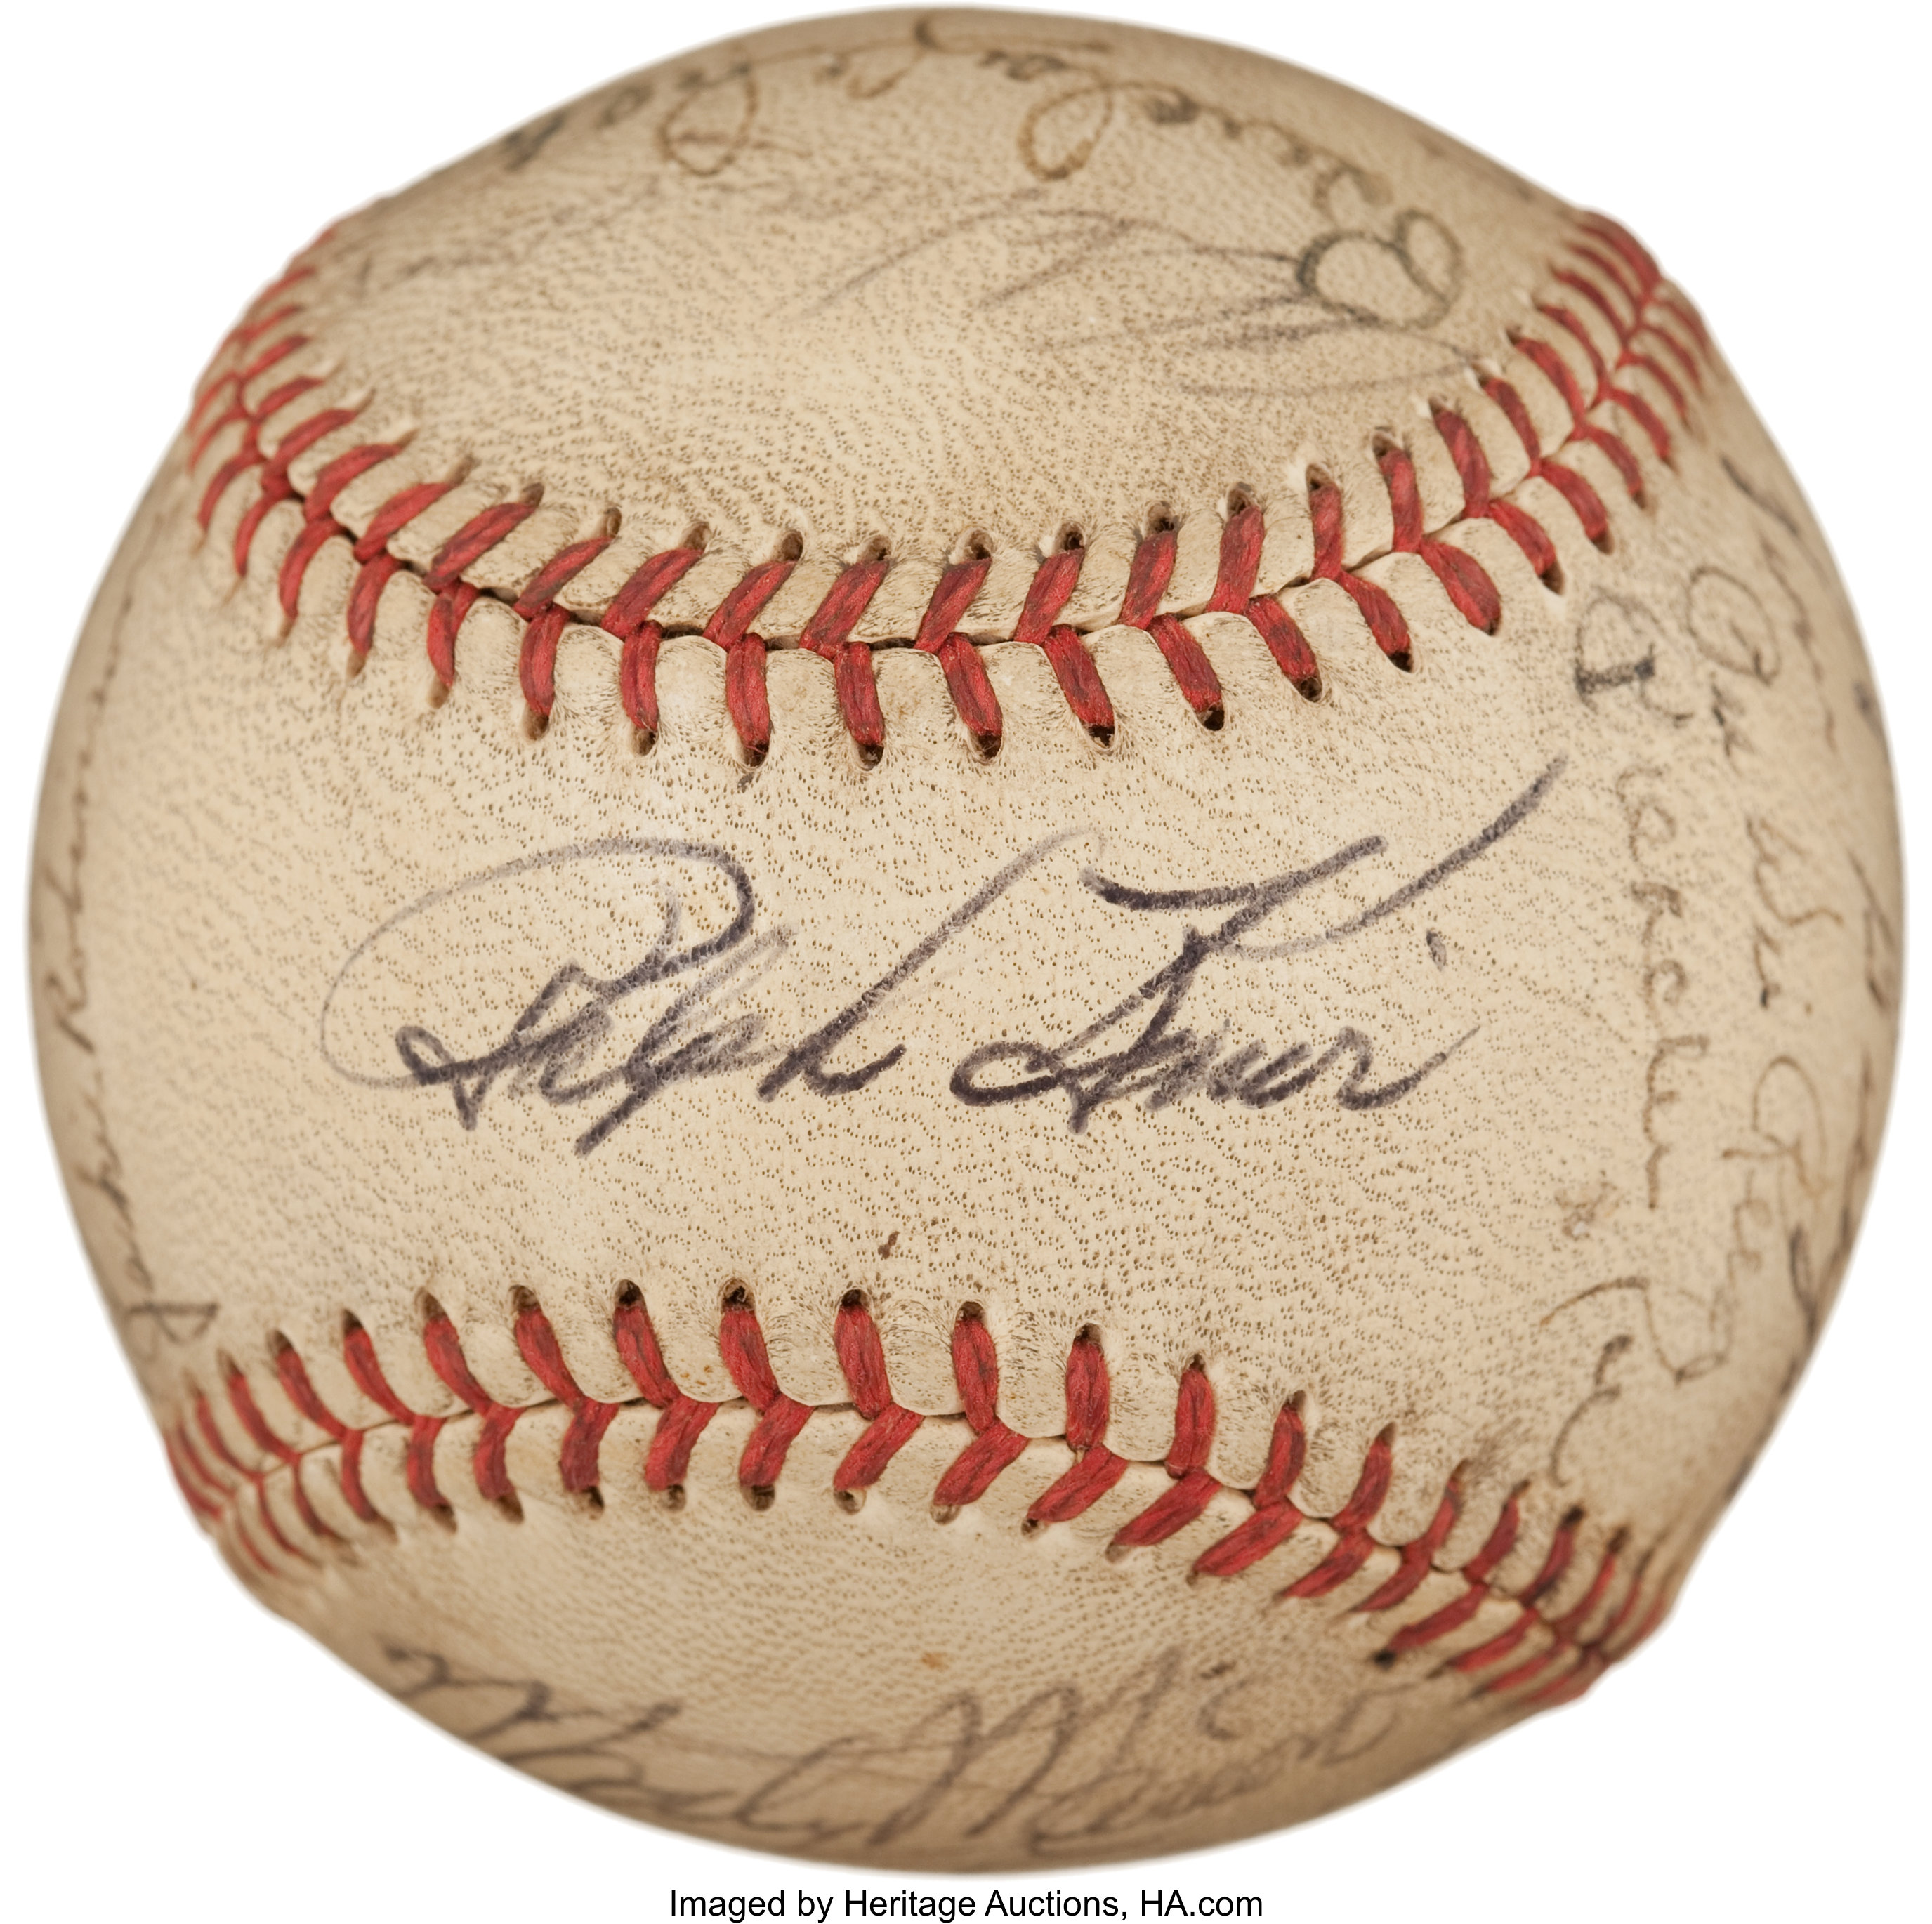 1950s baseball ball